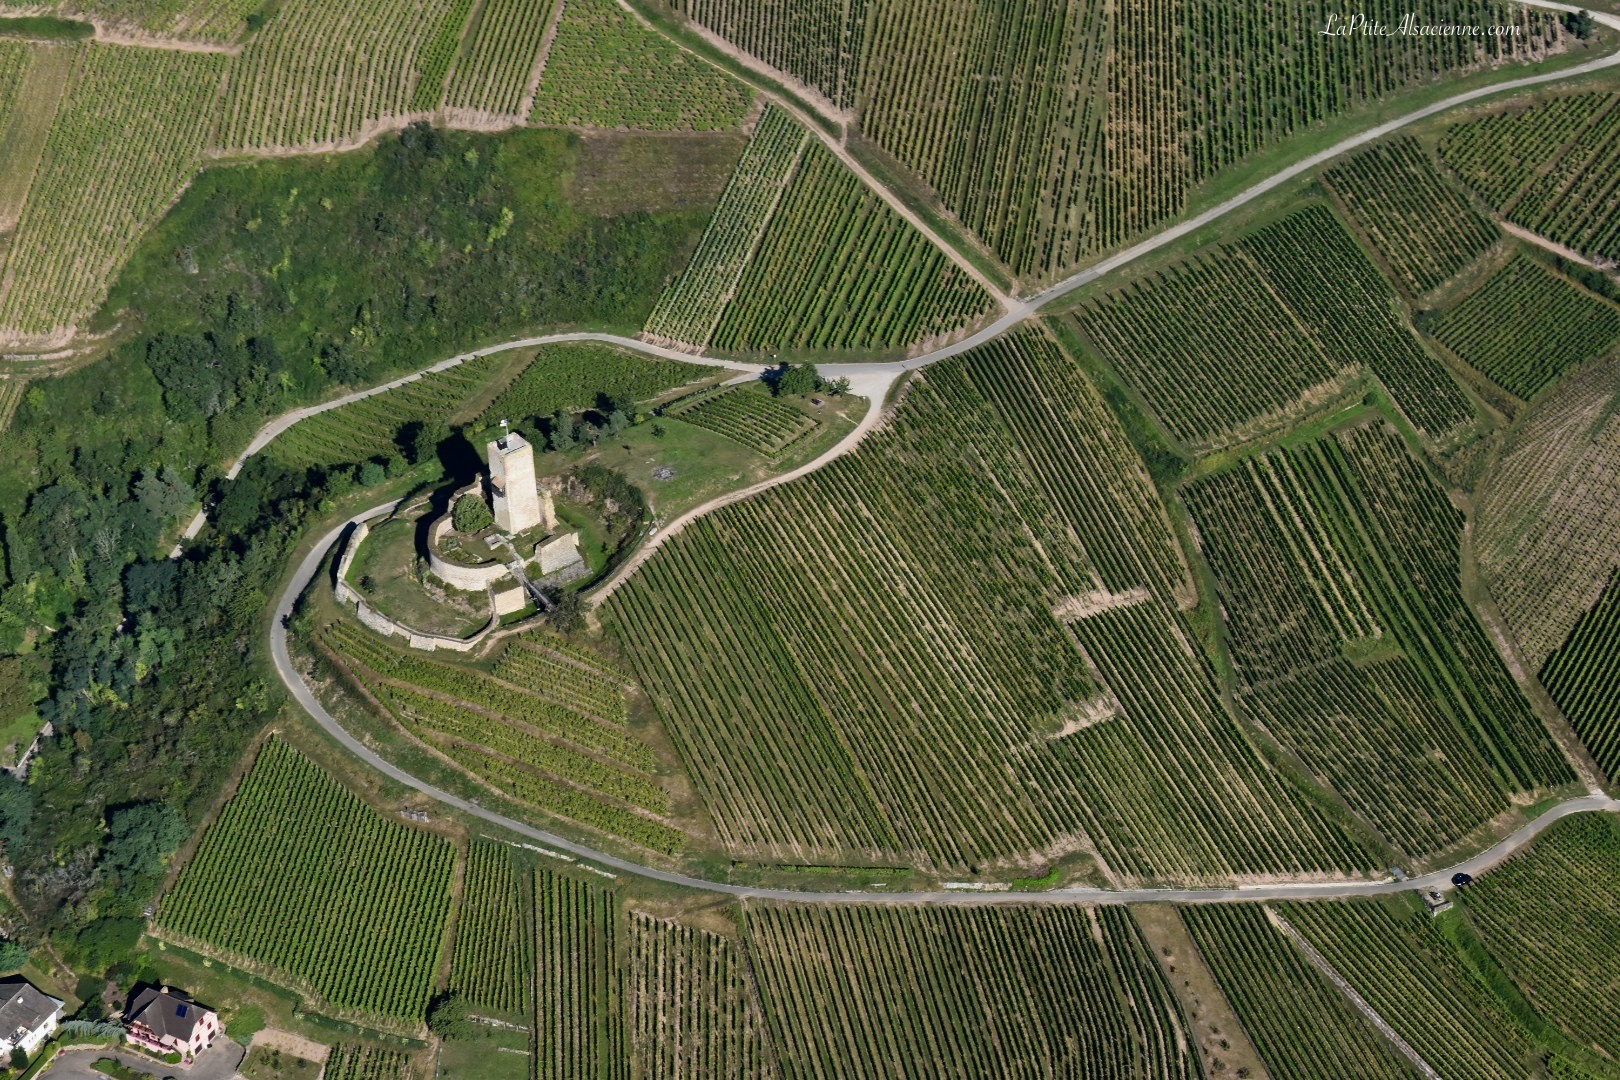 Ruine du Wineck à Katzenthal vue du ciel Par Cendrine Miesch dite LaPtiteAlsacienne pour l'article sur les châteaux forts en Alsace